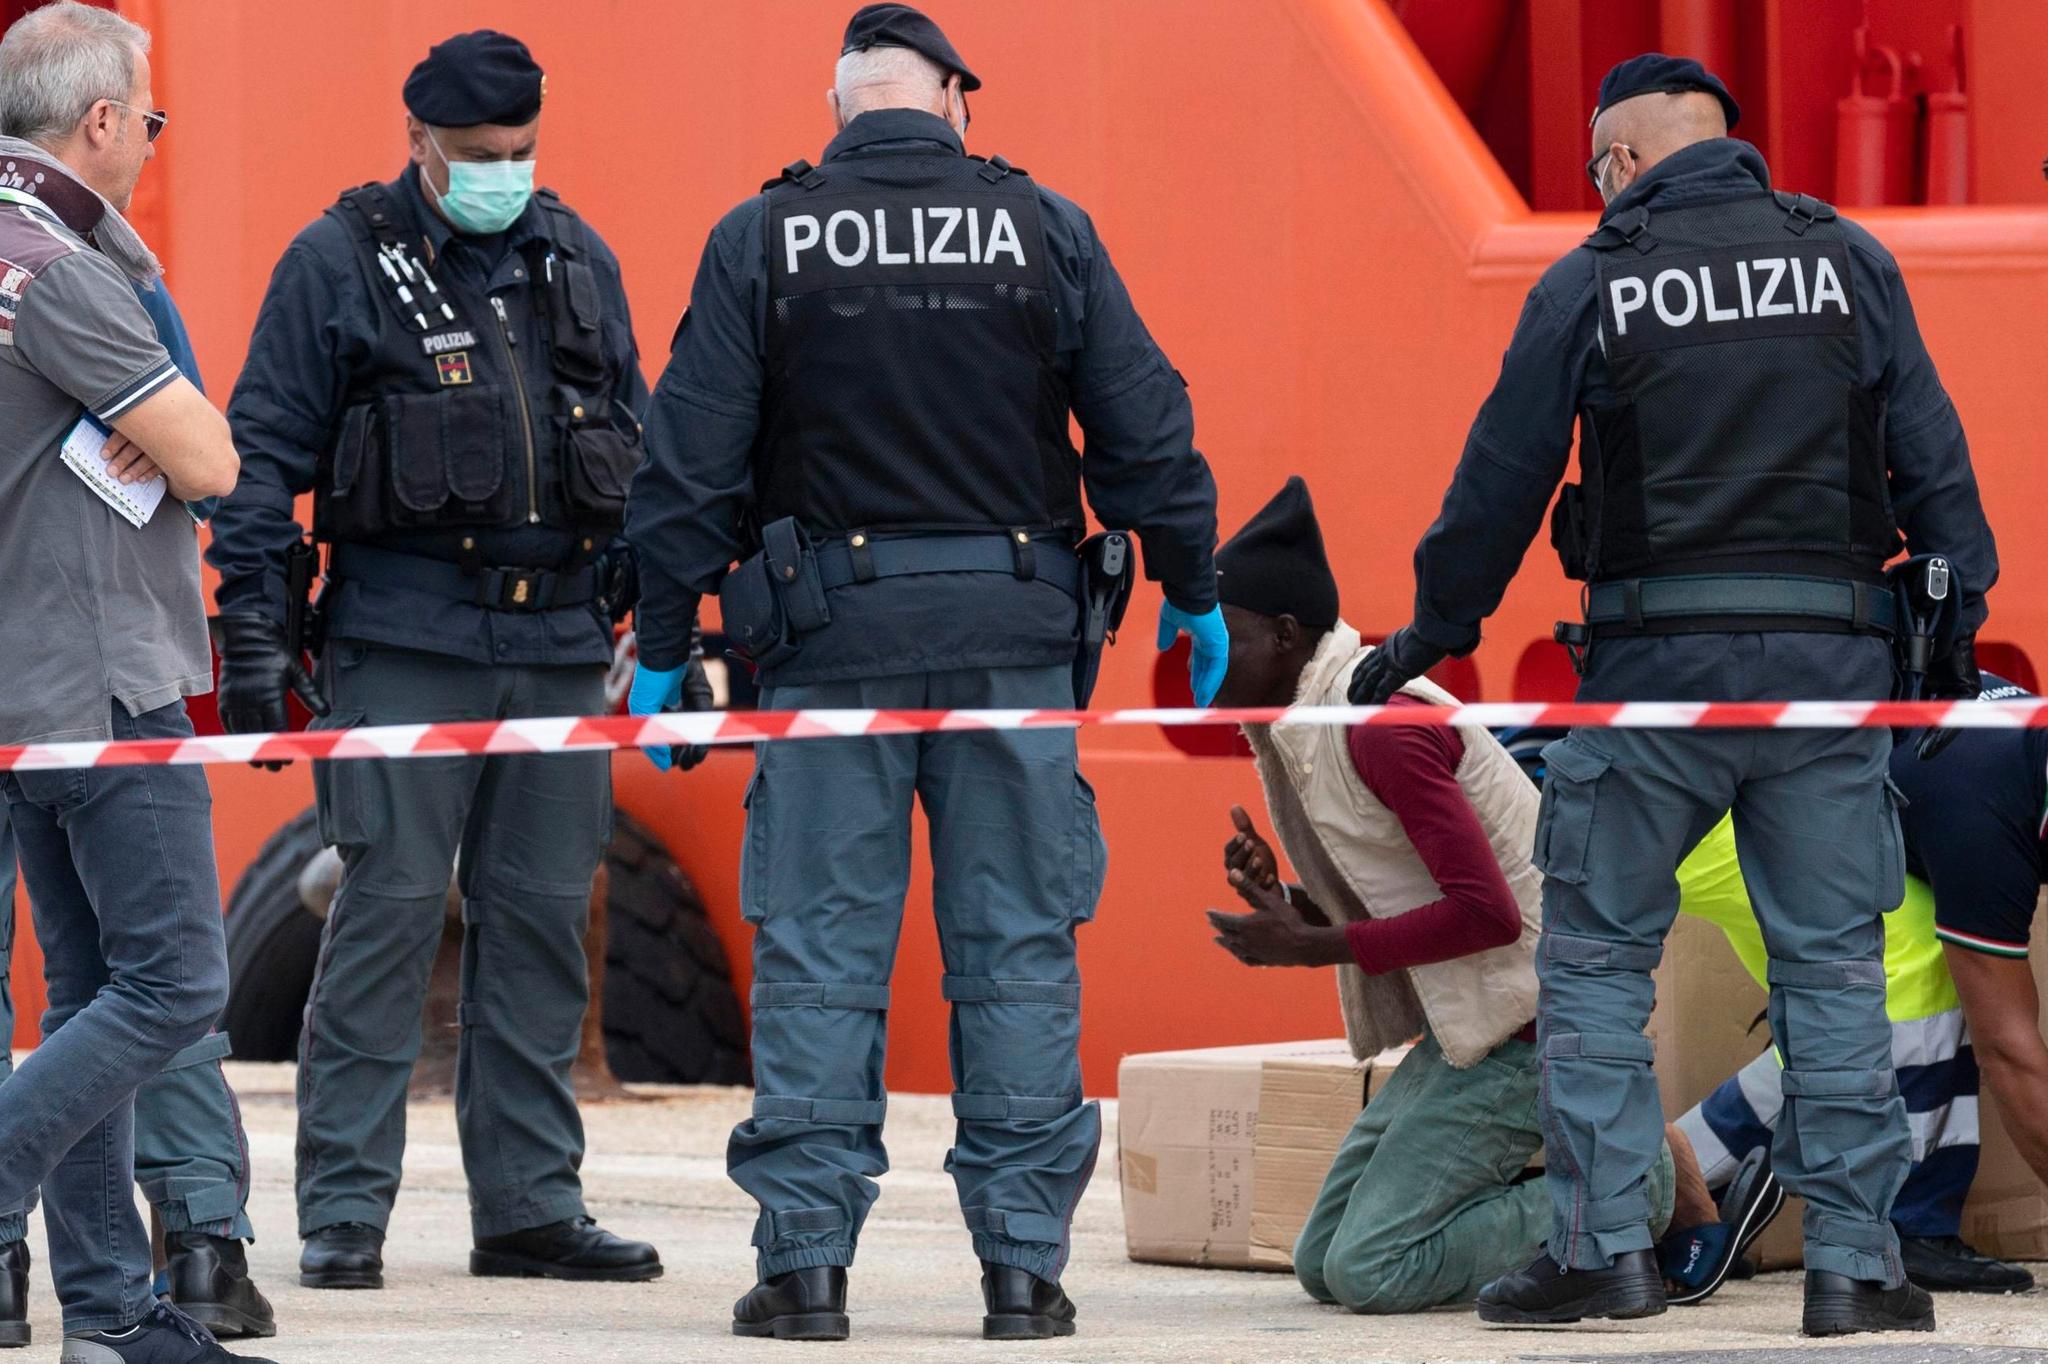 En migrant kneler i det han blir geleidet av en båt i den italienske havnen Pozzallo den 3. november.